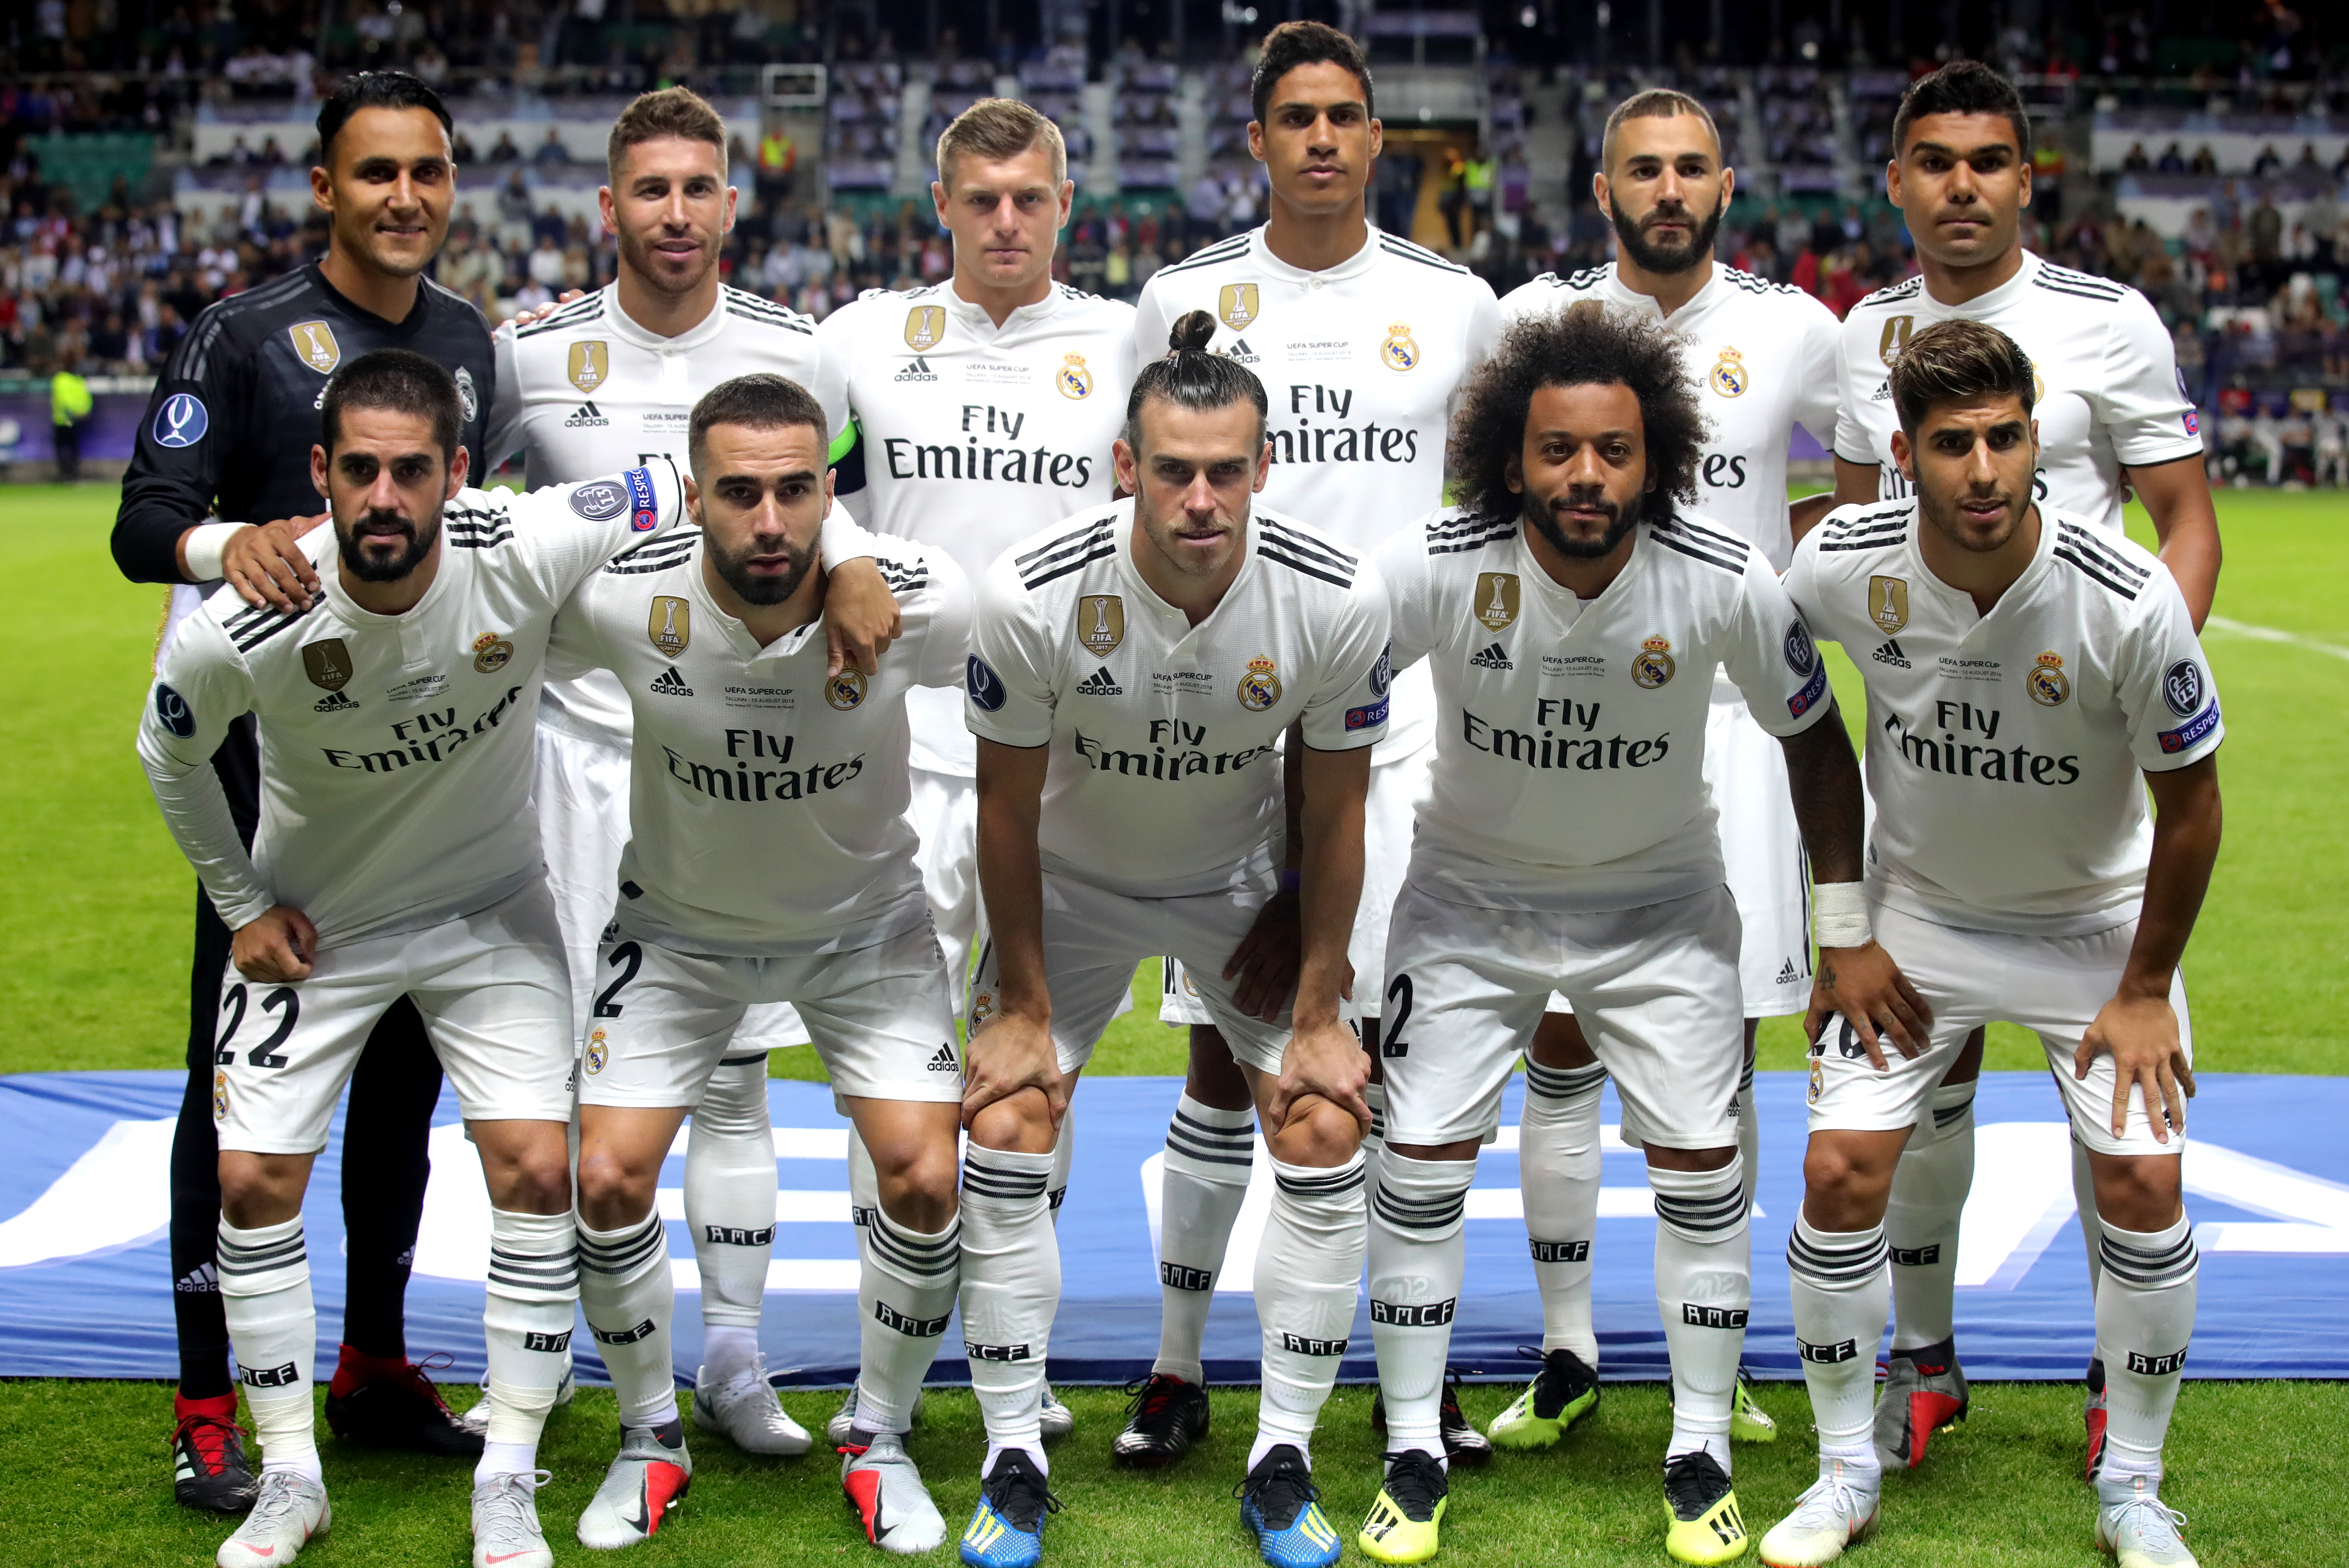 Сайты фк реал. Футбольная команда Реал Мадрид. Фото футбольной команды Реал Мадрид. Команда футбольной команды Реал Мадрид. Команды футболист яалмадрит.